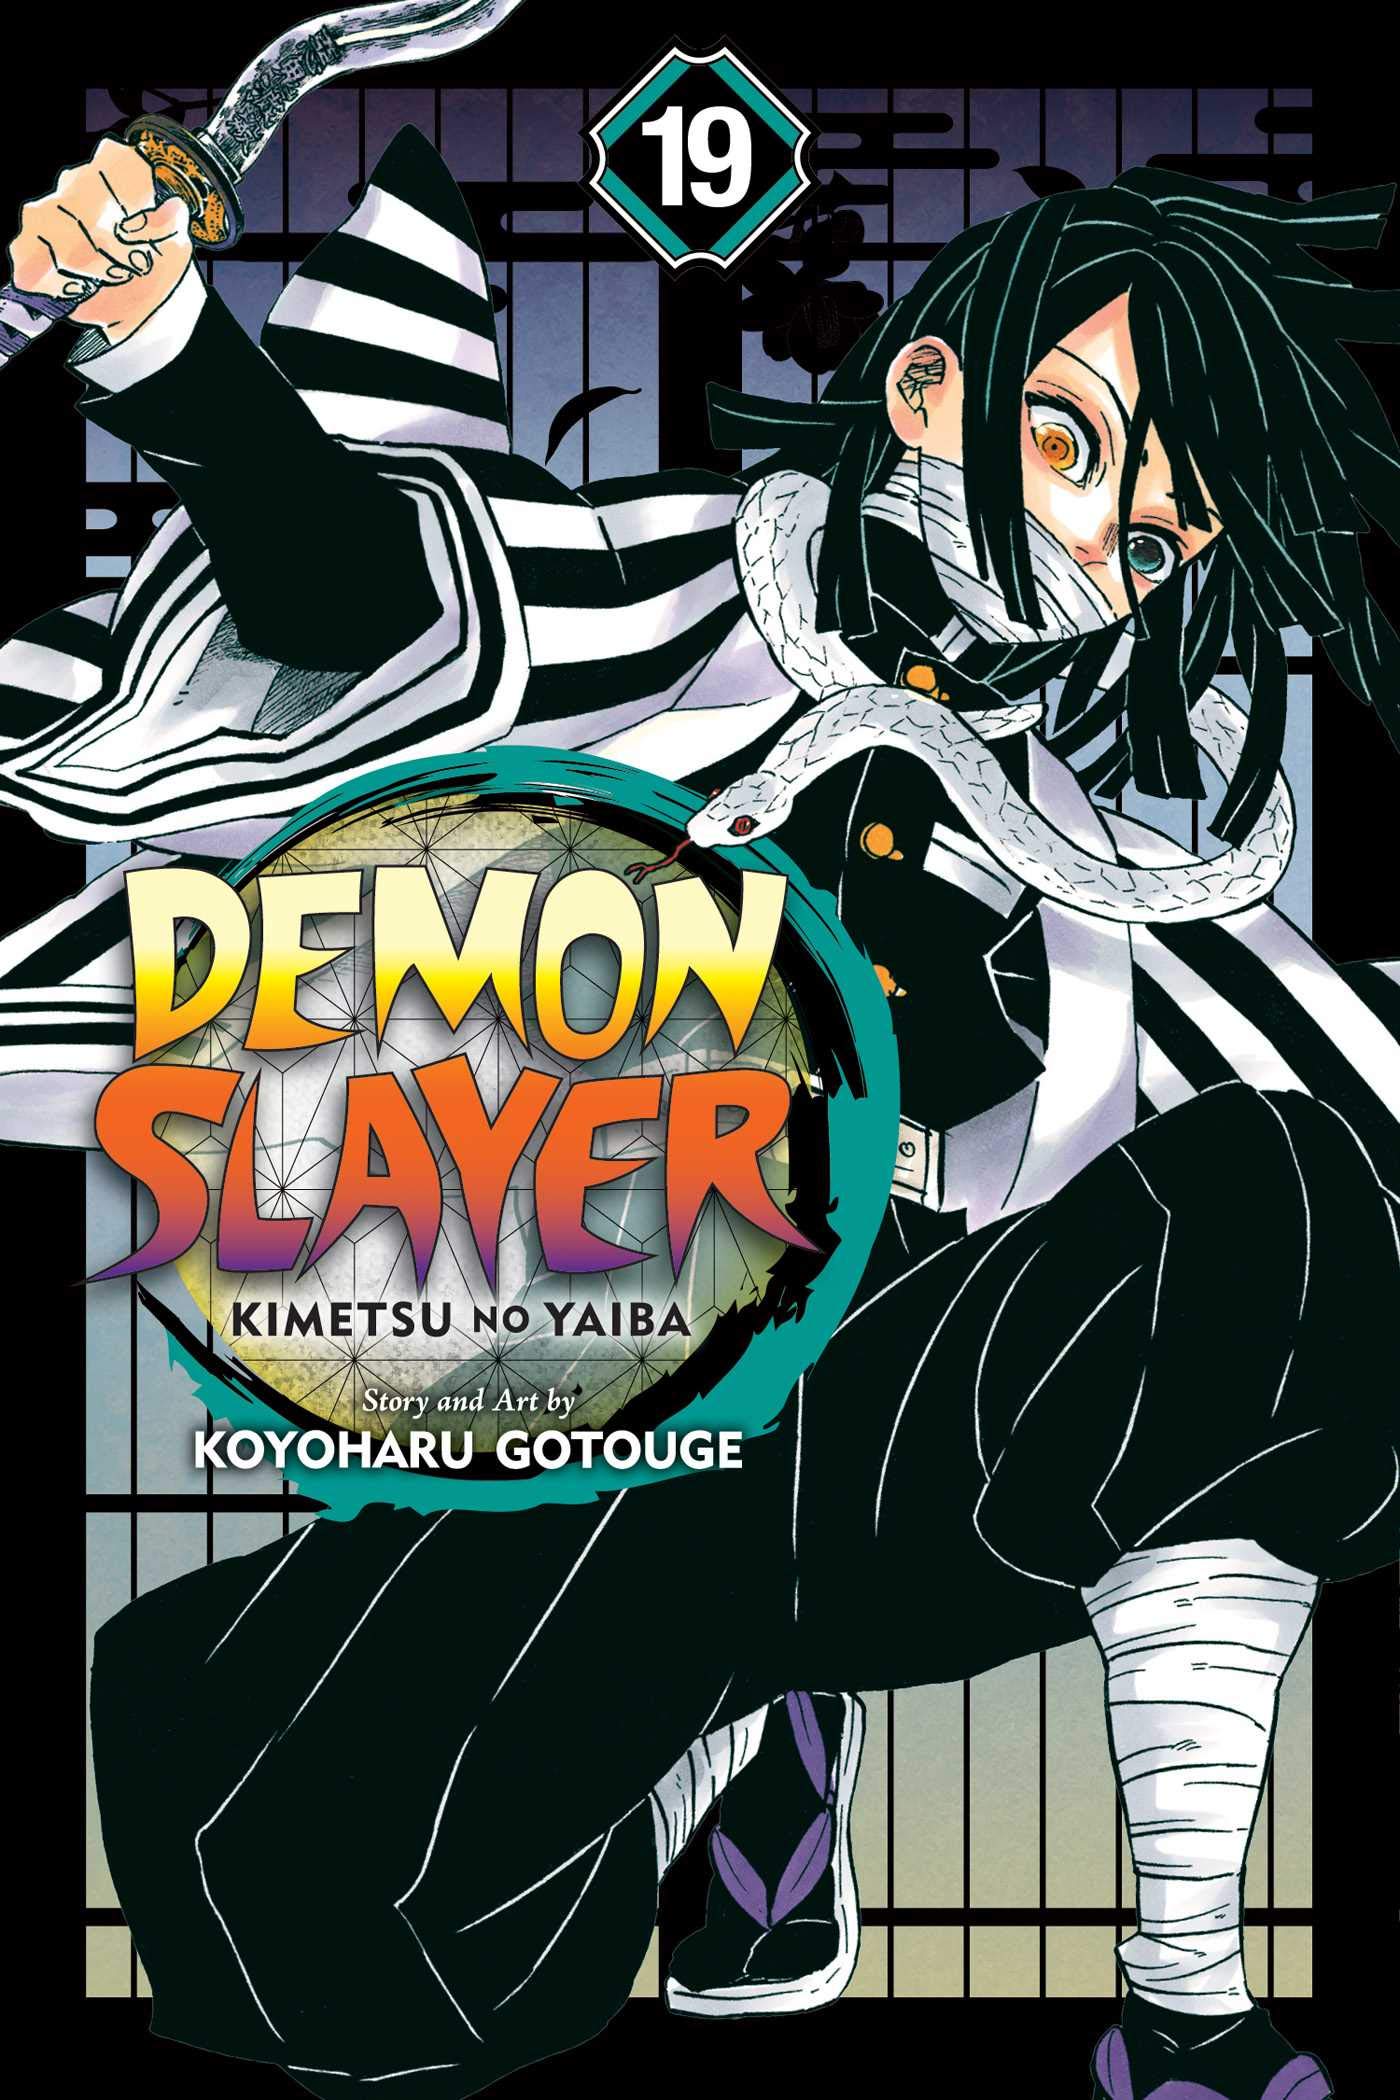 Demon Slayer: Kimetsu no Yaiba, Vol. 19 | Koyoharu Gotouge